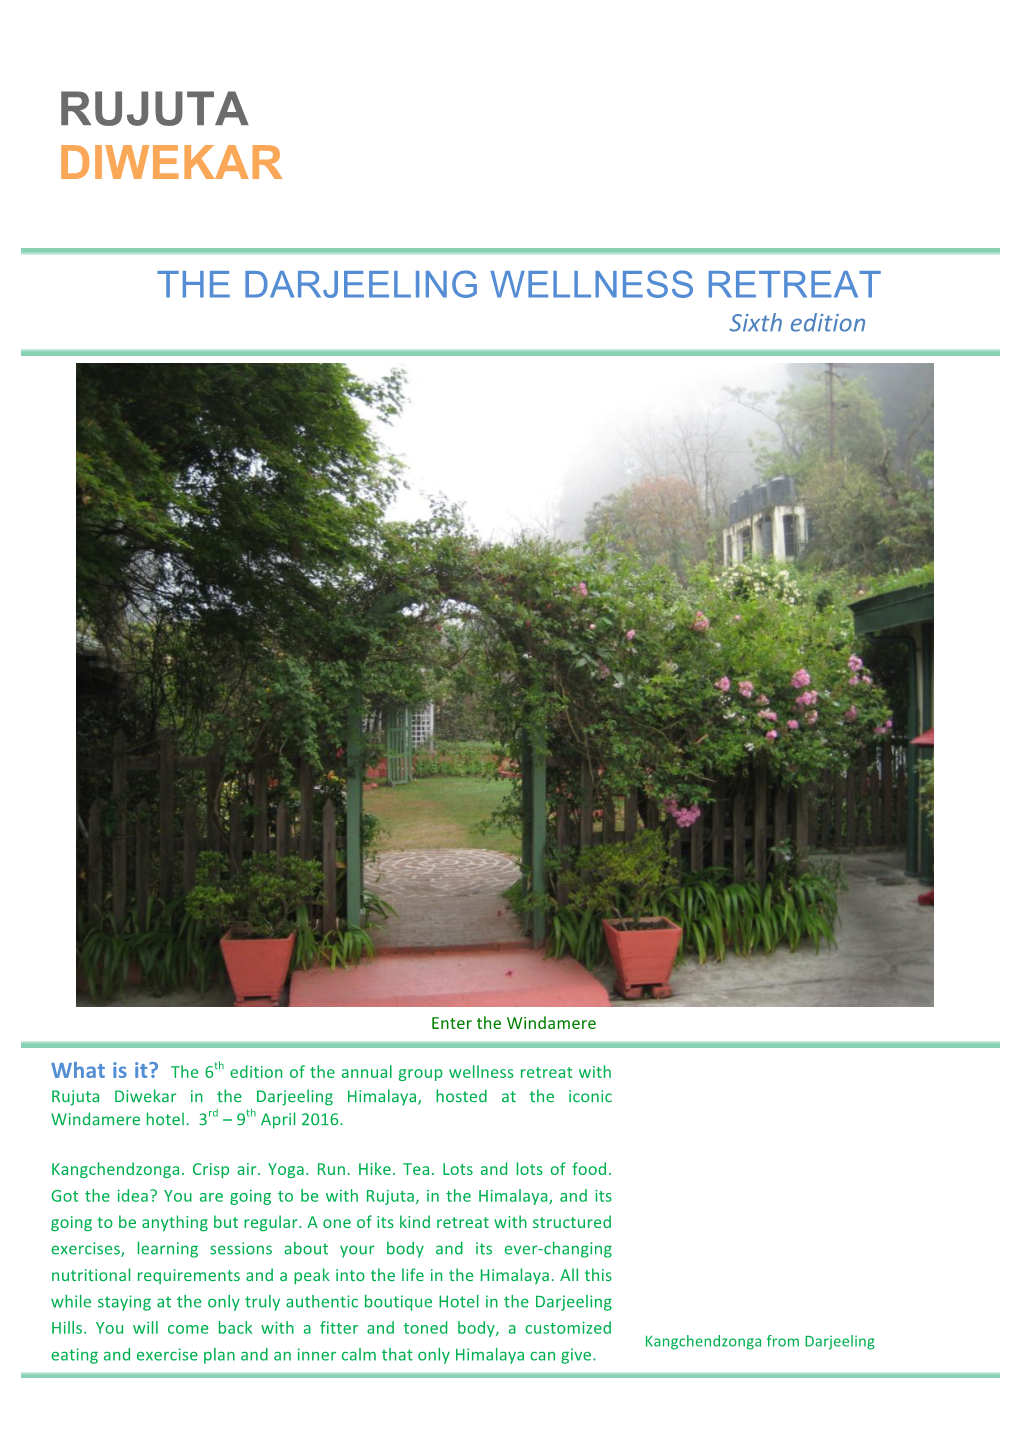 How the Darjeeling Wellness Retreat Is Structured